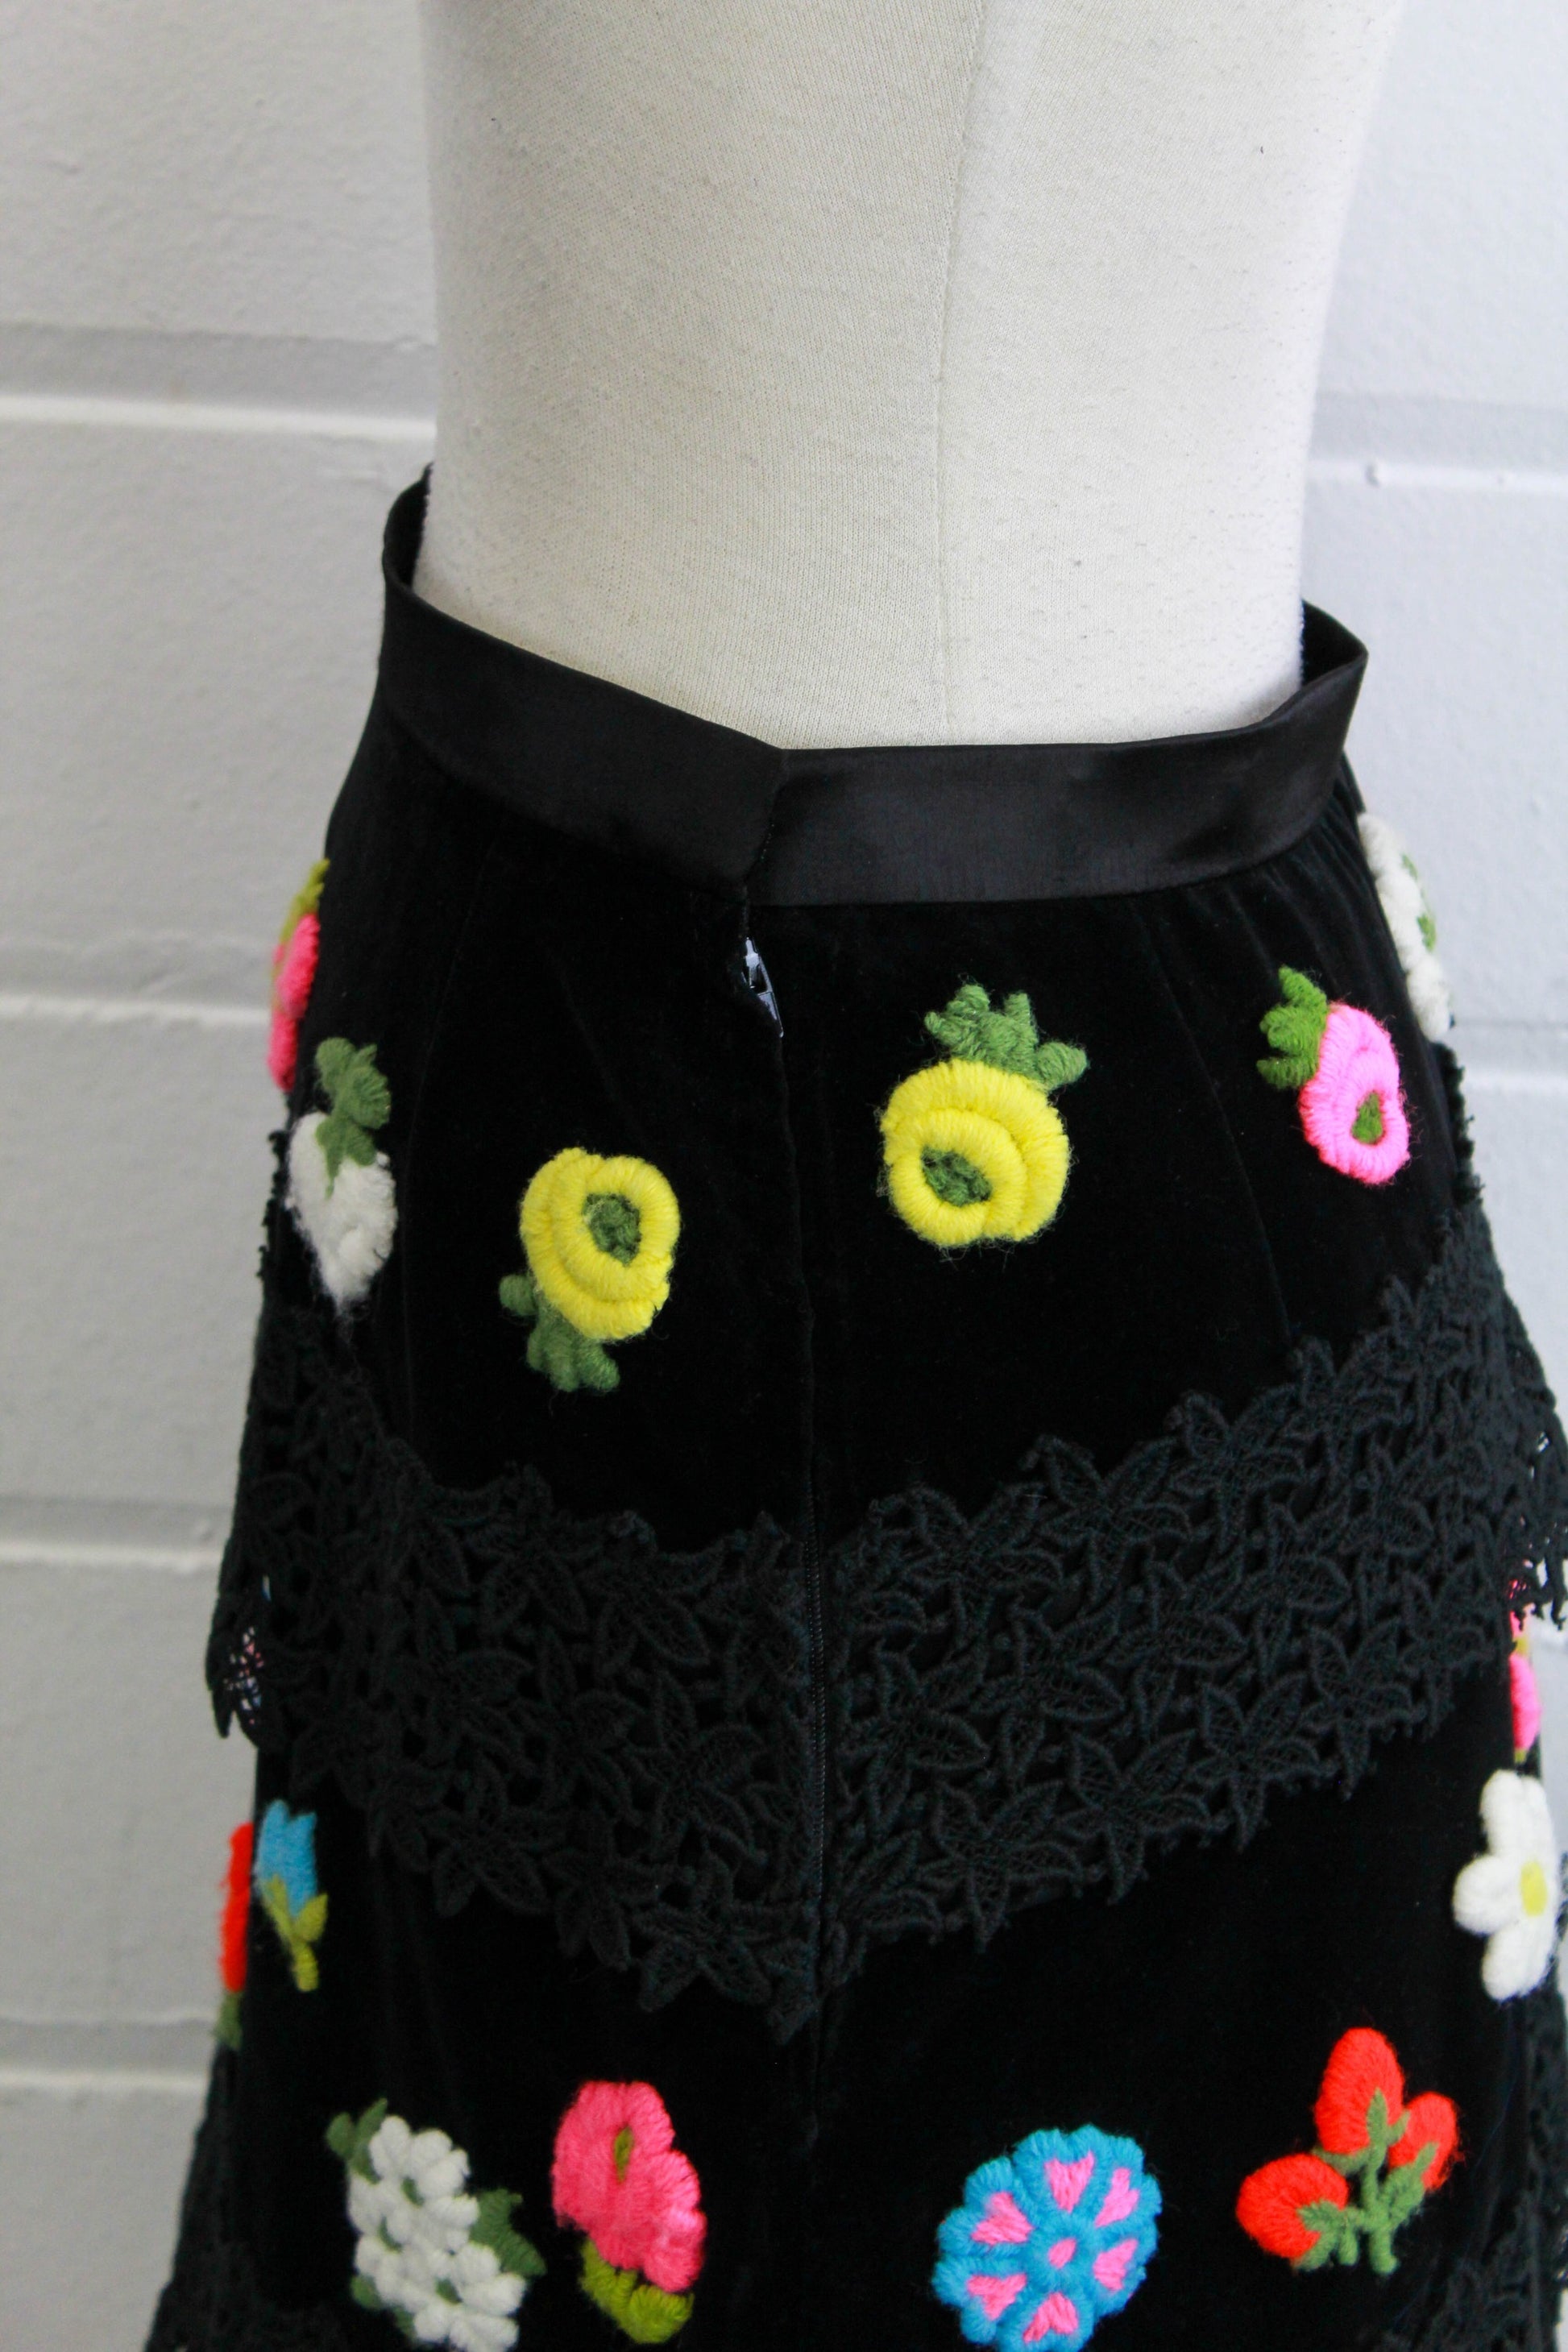 1970s floral applique maxi skirt black velvet with lace, side view zipper closure close up